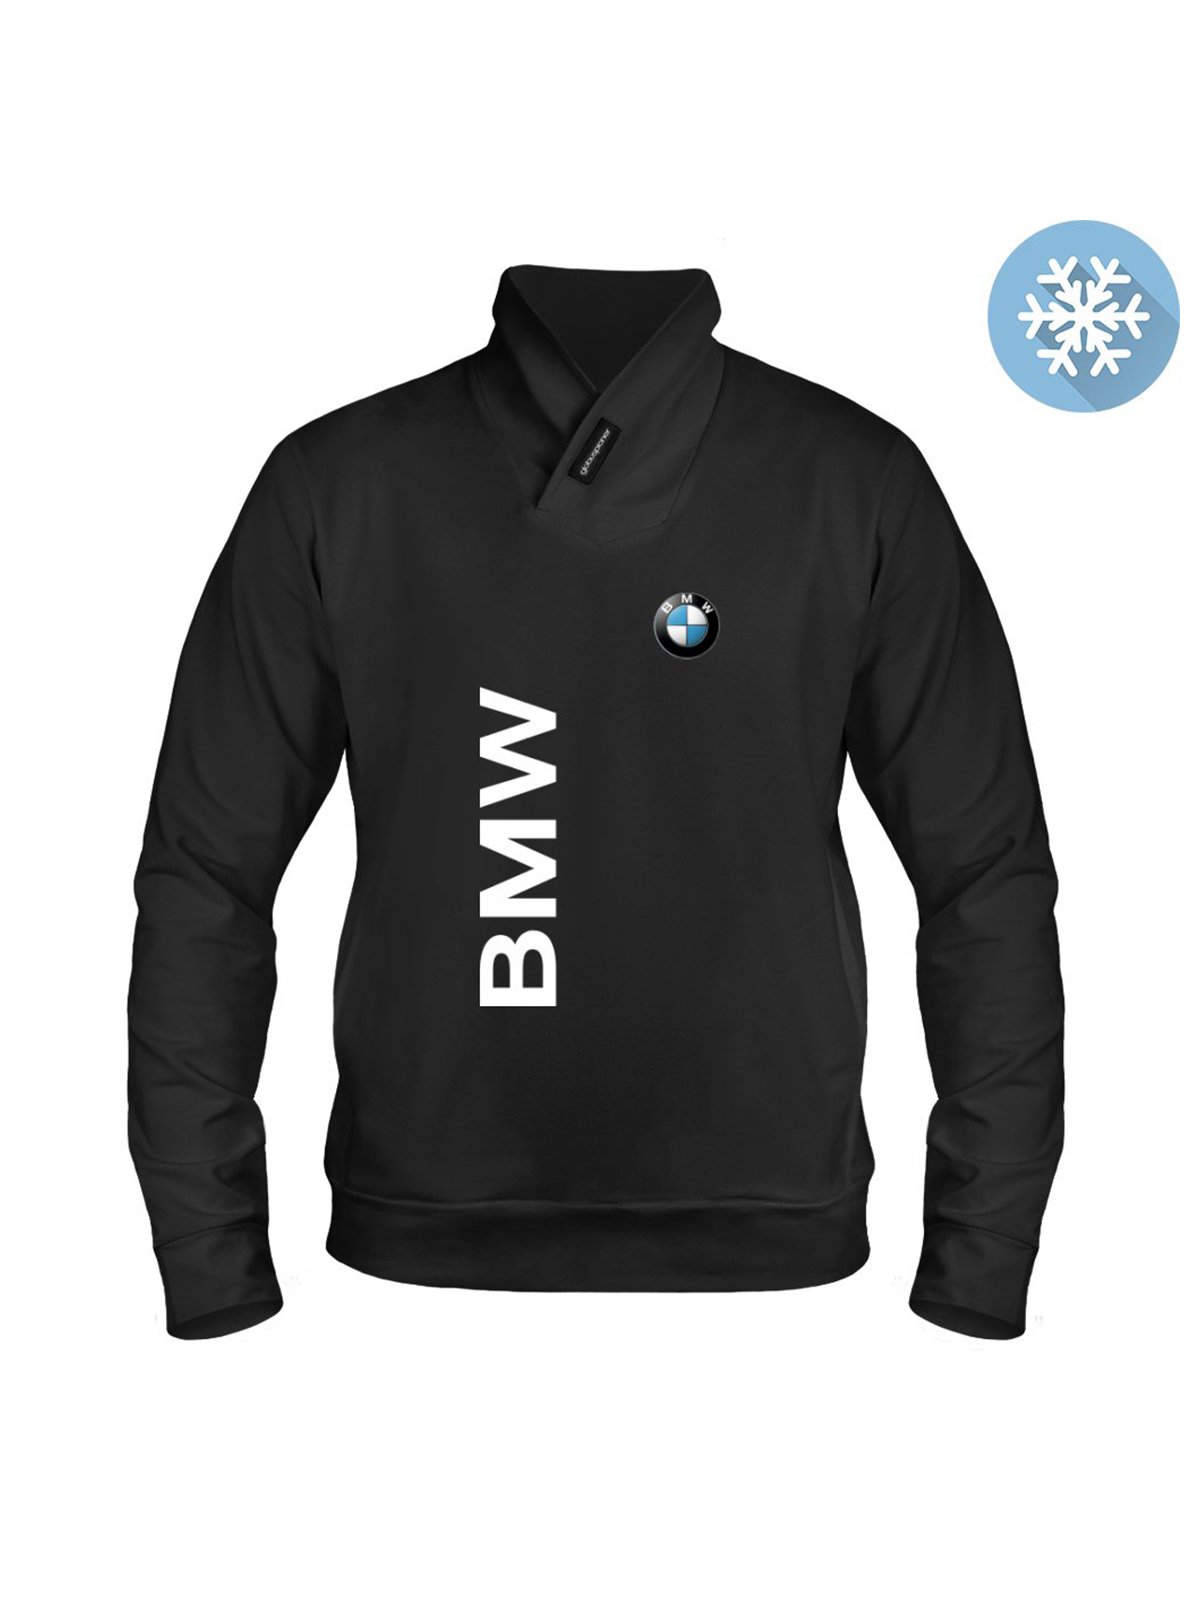 Одежда с логотипом БМВ